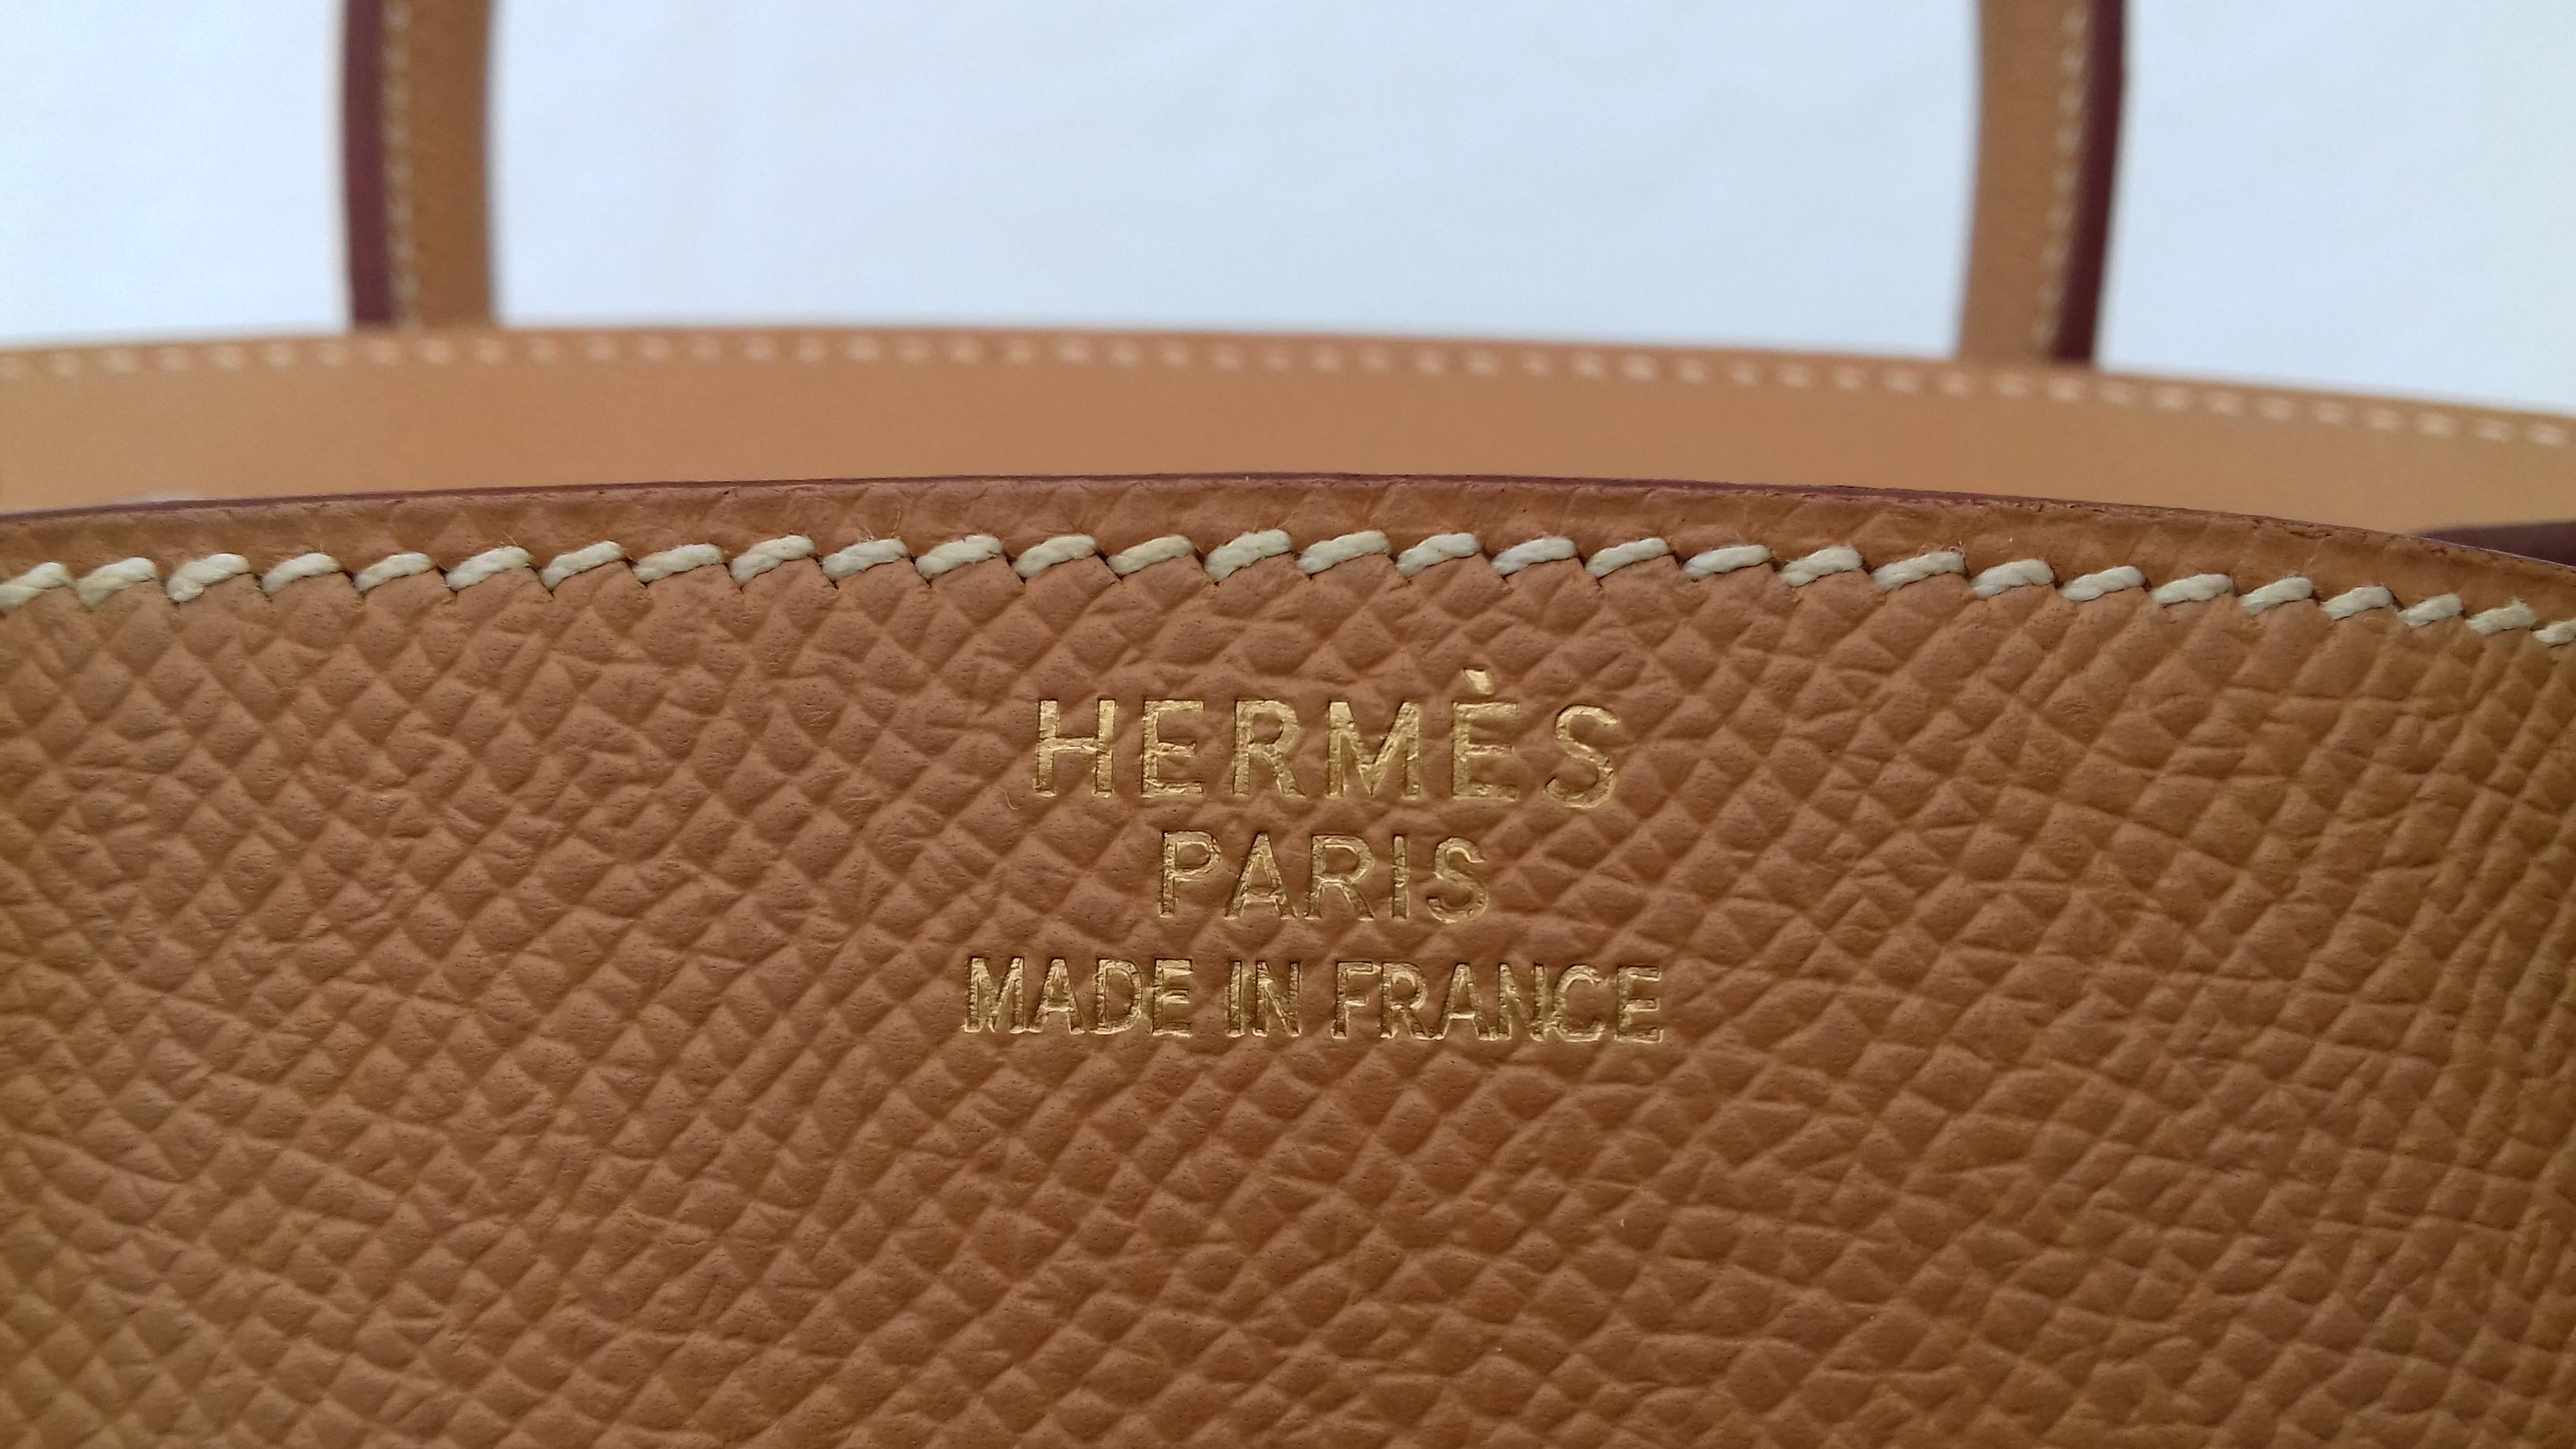 Hermès Birkin Top Handle Bag Naturel Epsom Leather Gold Hdw 35 cm 4